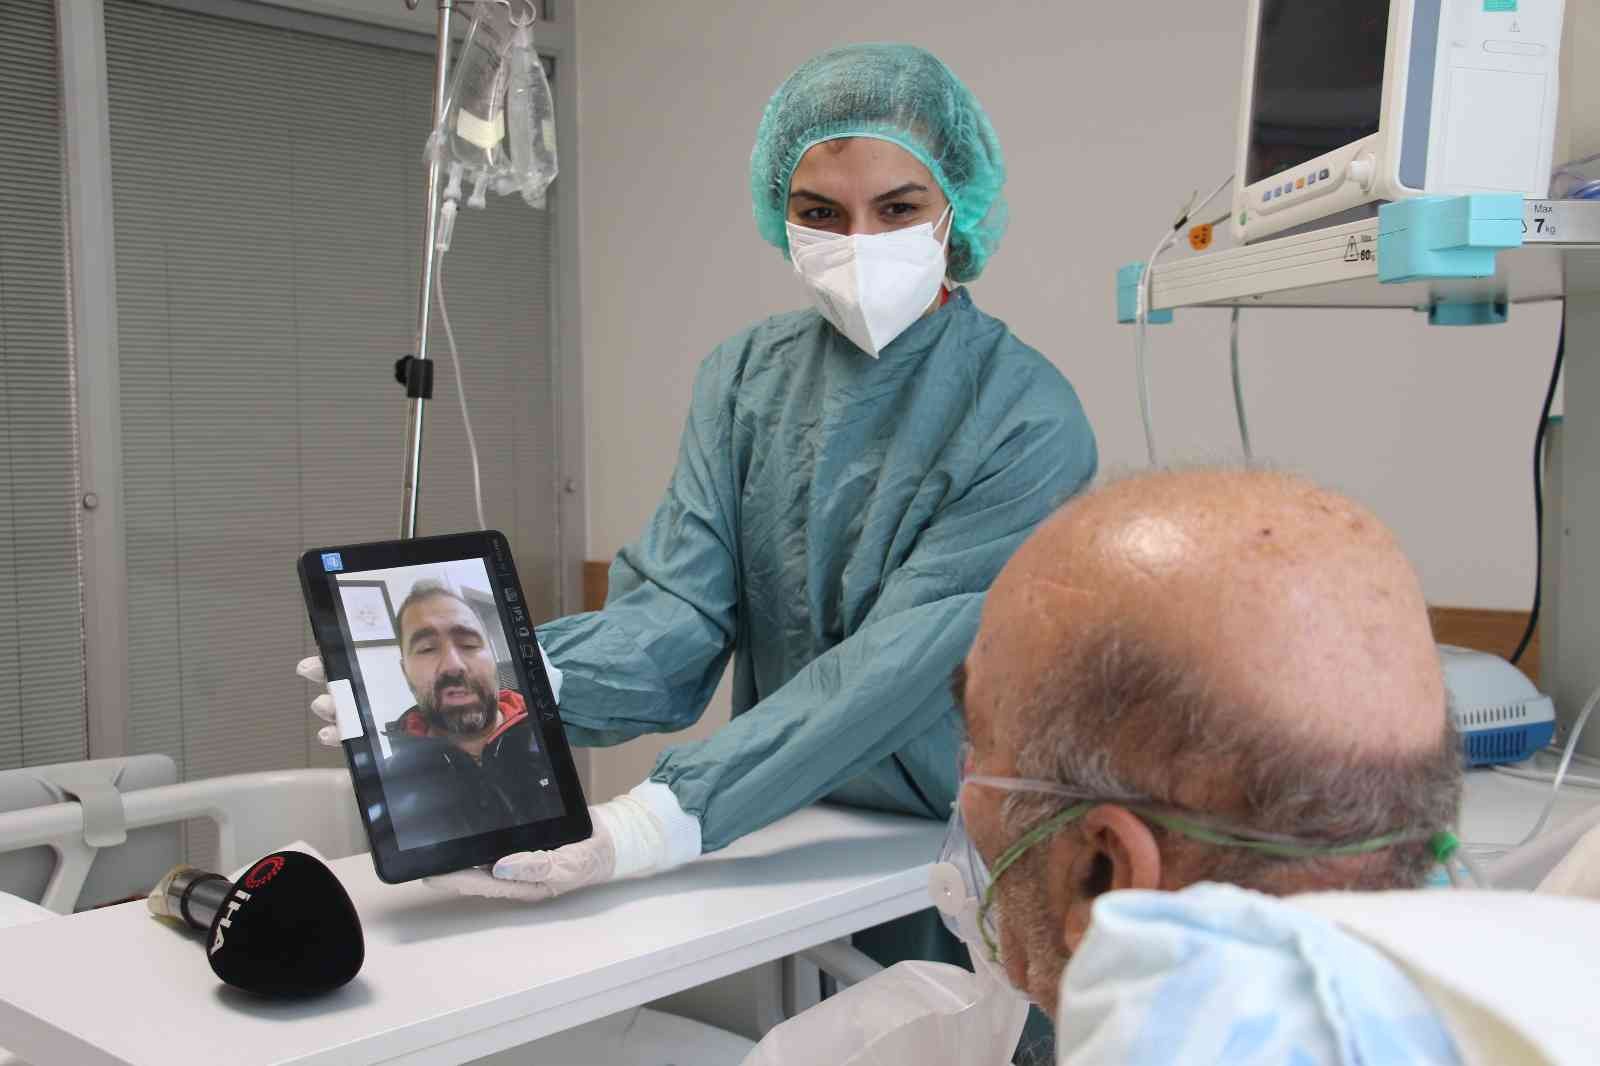 (ÖZEL) Covid-19 yoğun bakımında ailelerini göremeyen hastalar, aldıkları video mesajlar ile moral buluyor #ankara